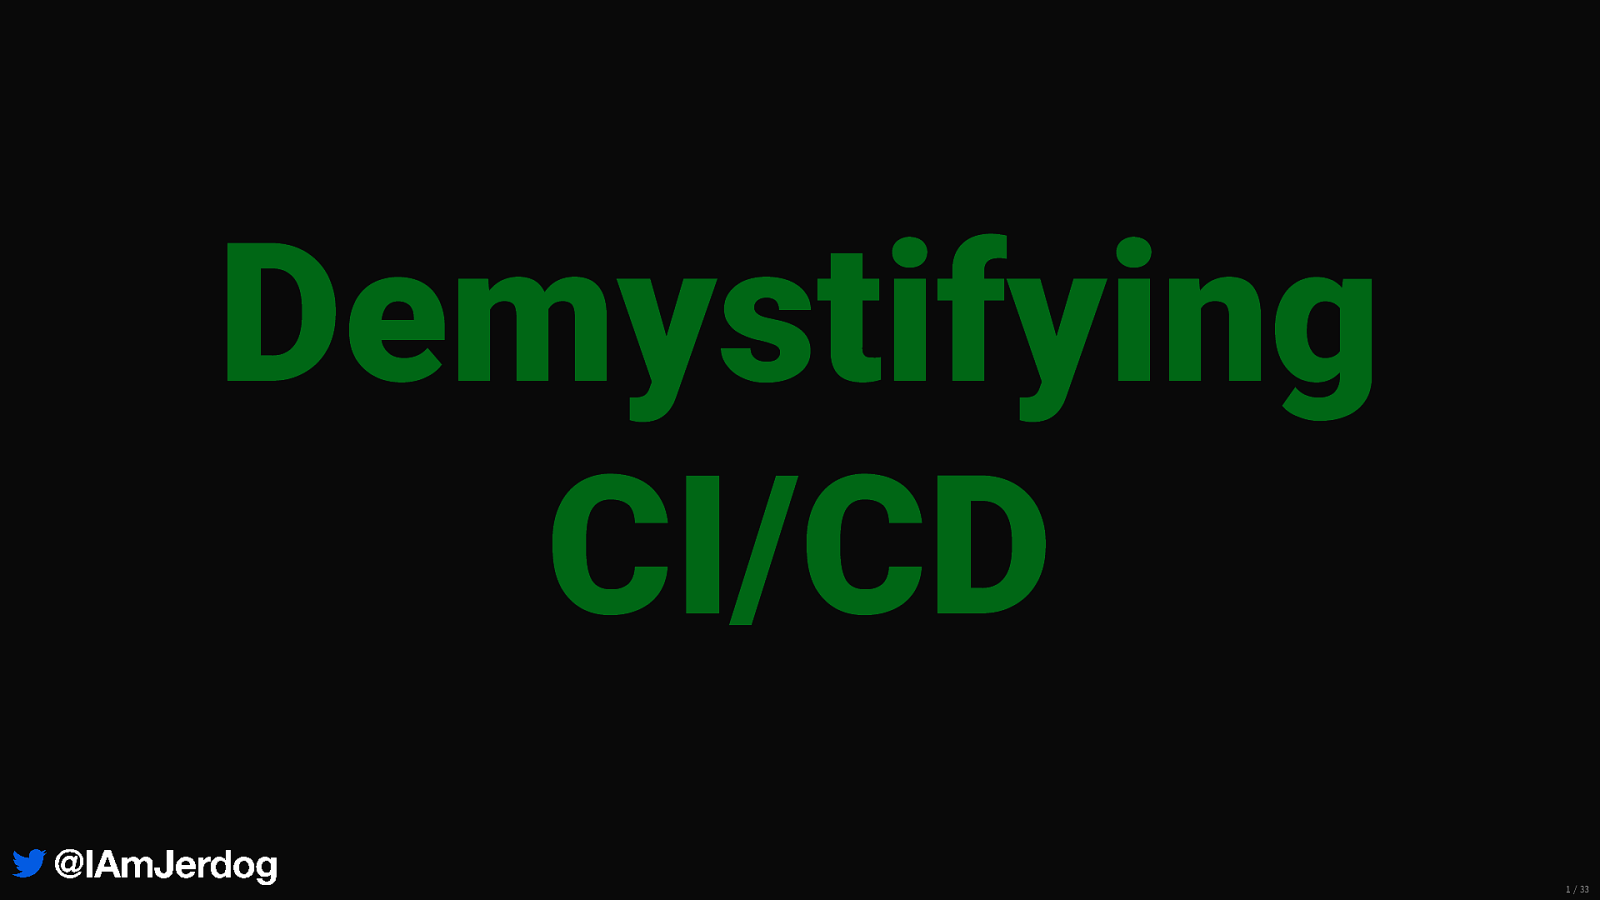 Demystifying CI/CD